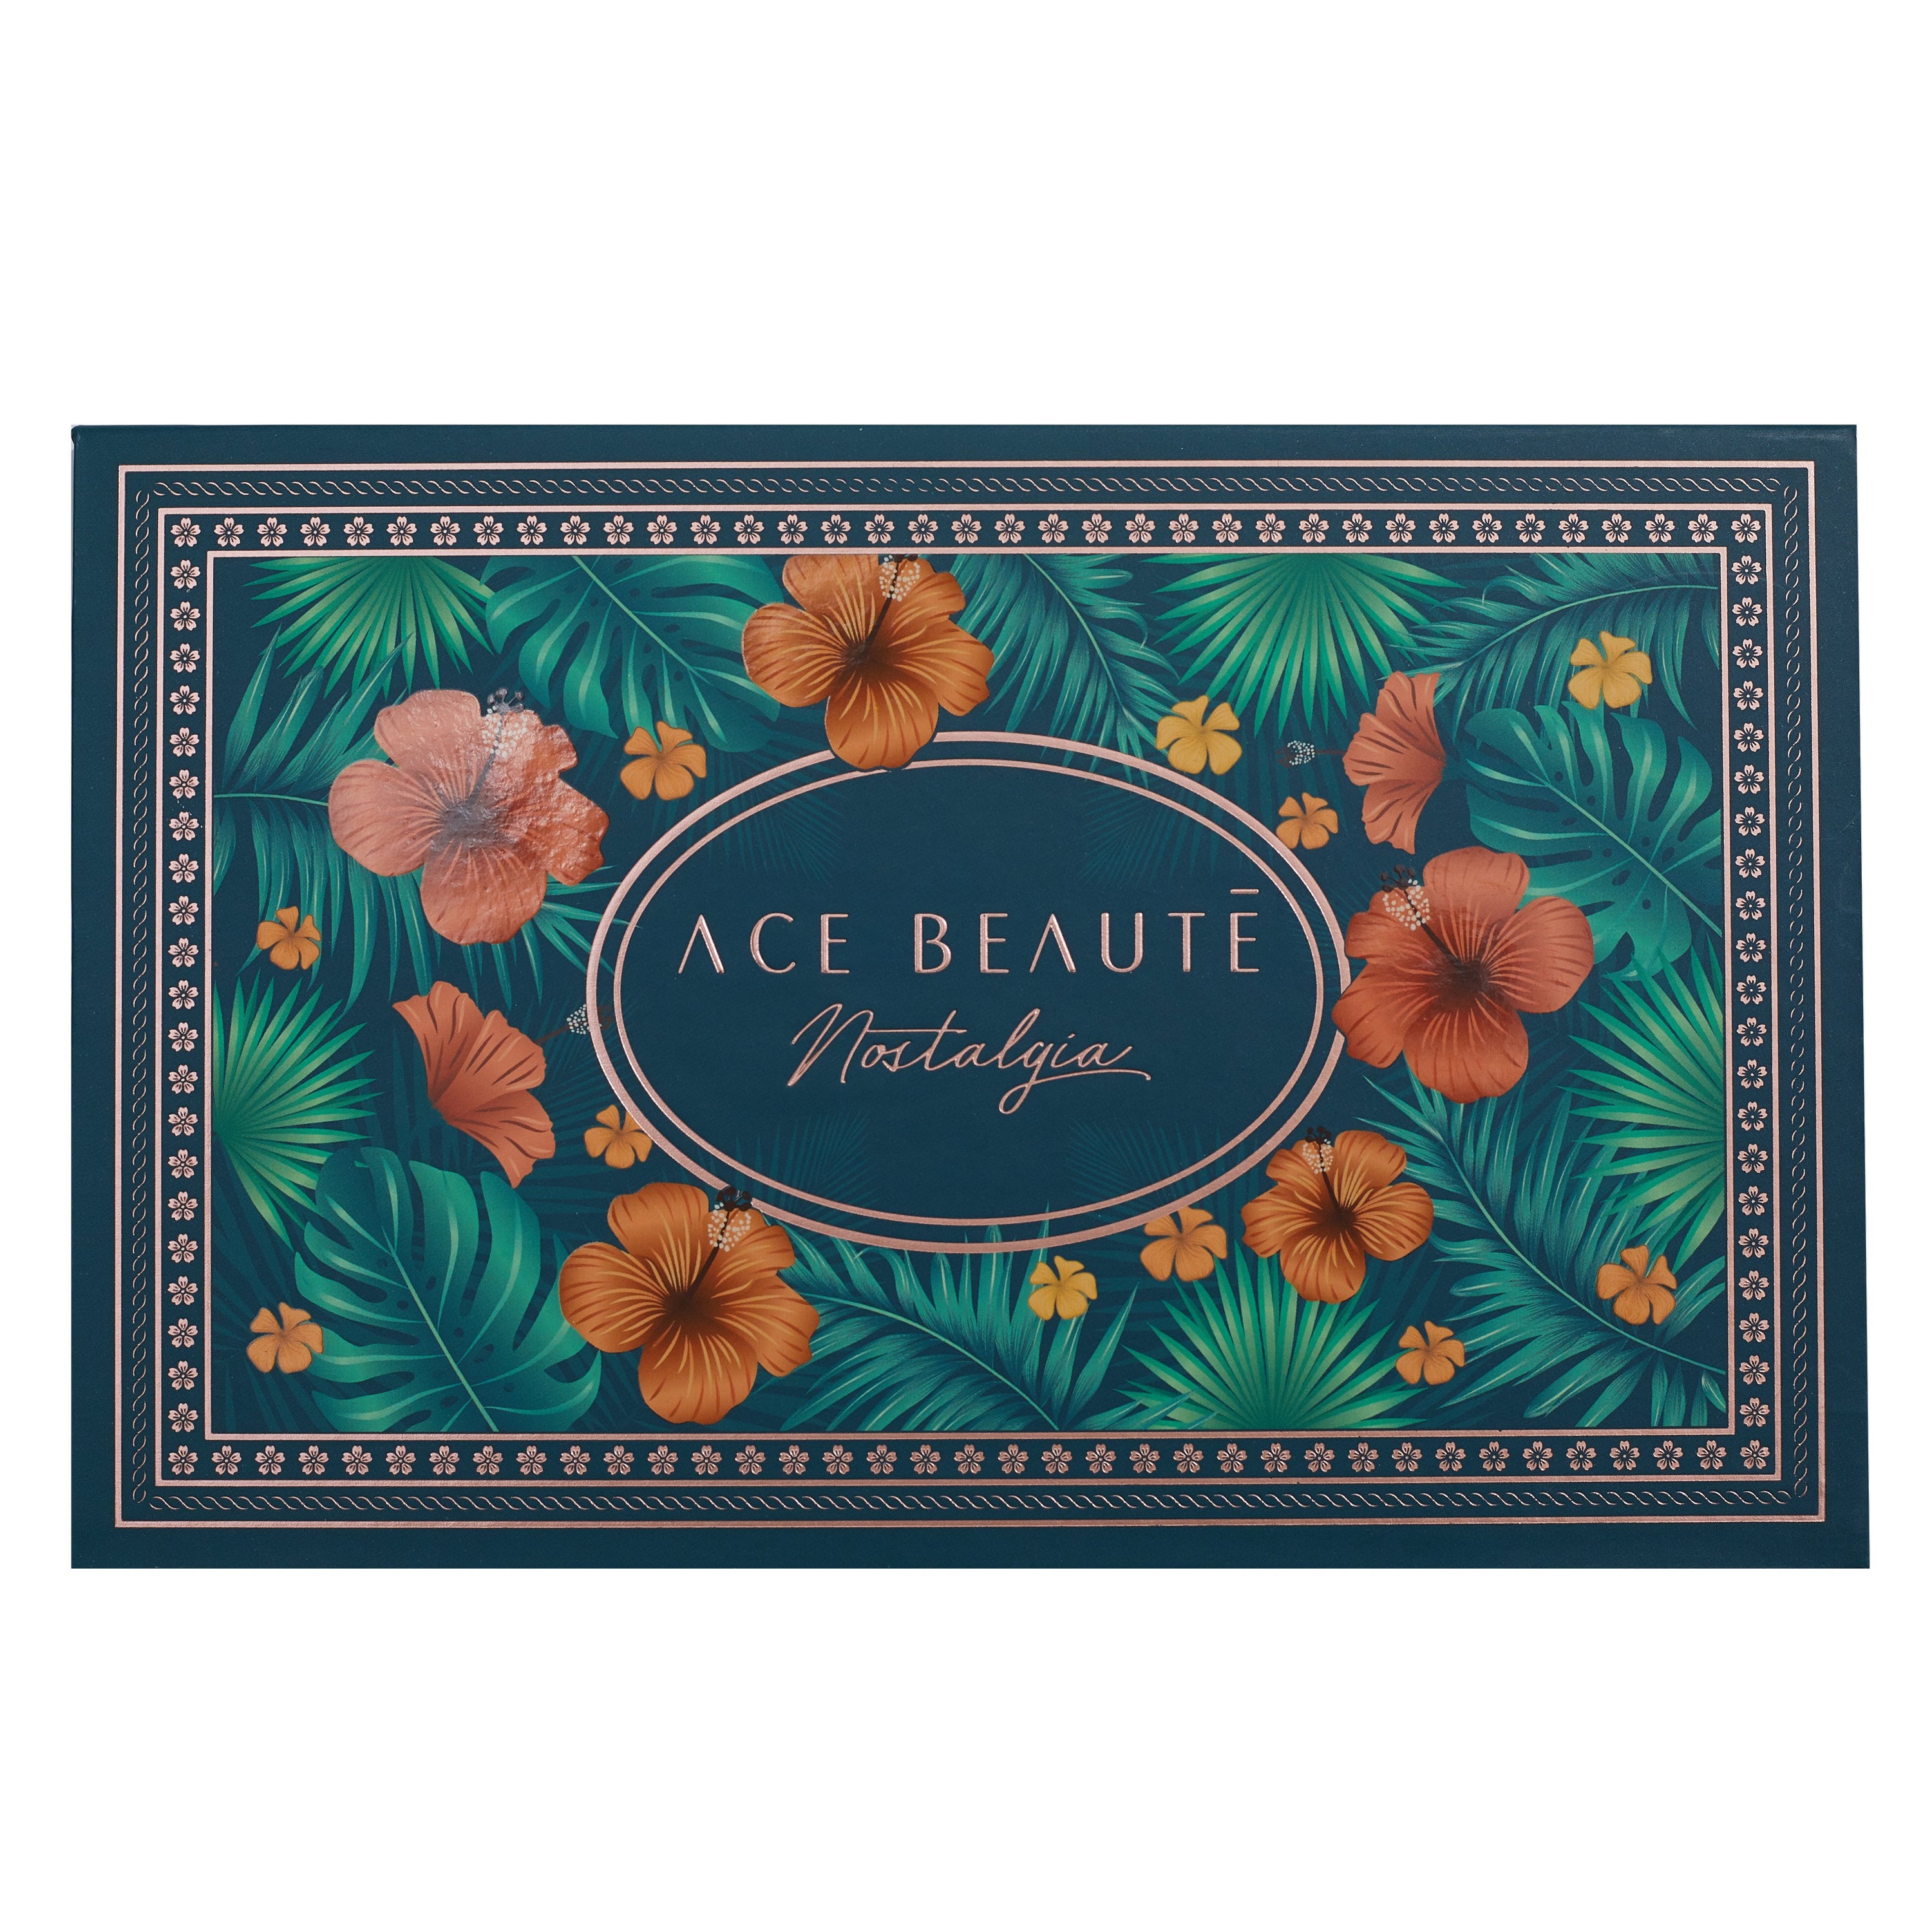 Ace Beaute - Nostalgia Palette